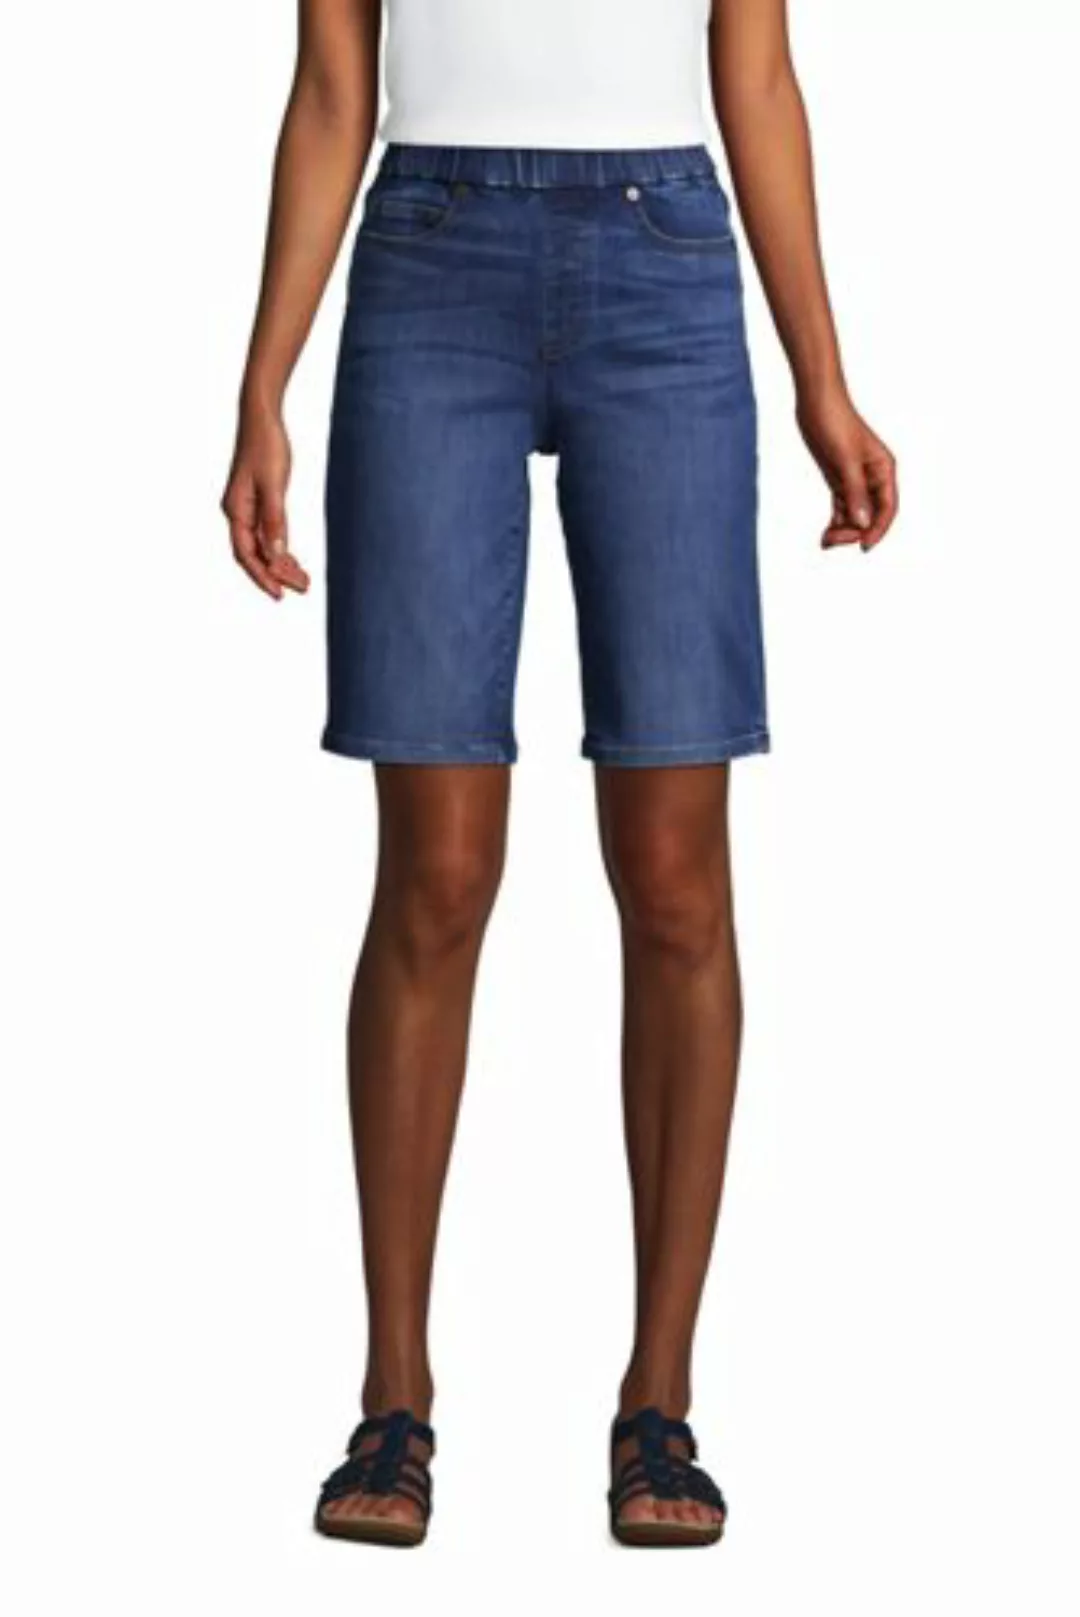 Jeans-Bermudas High Waist mit Dehnbund in großen Größen, Damen, Größe: 56 P günstig online kaufen